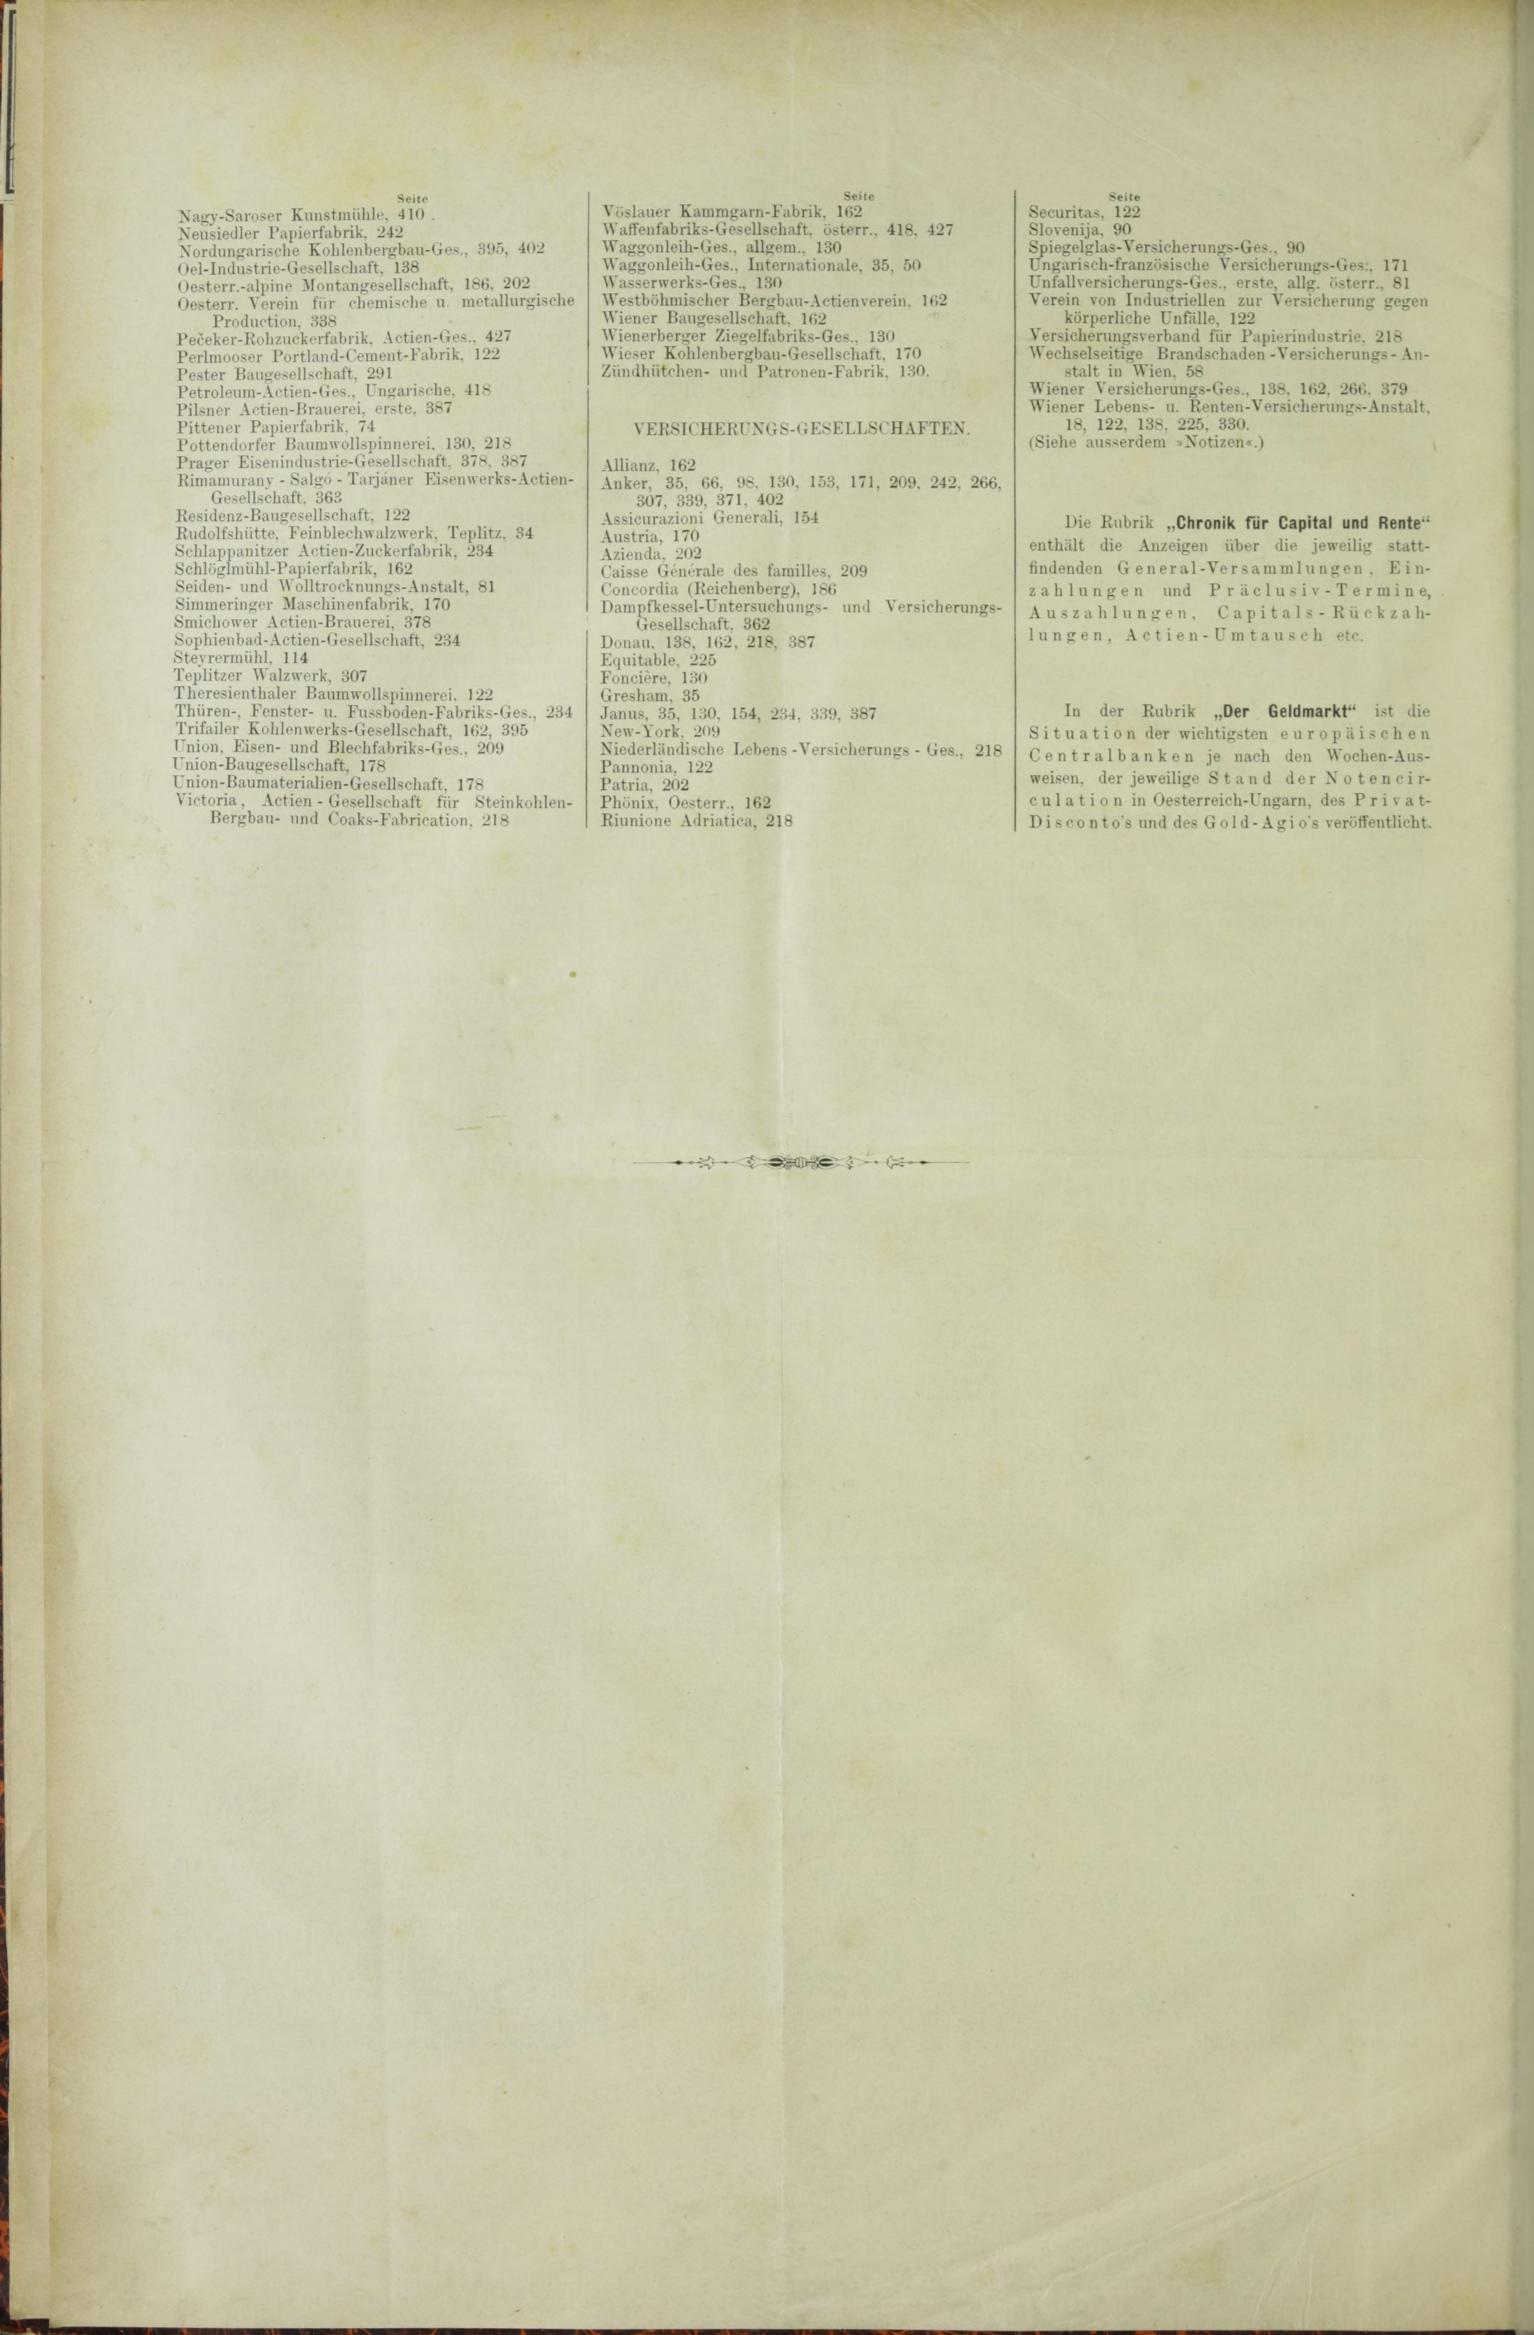 Der Tresor 30.04.1885 - Seite 12